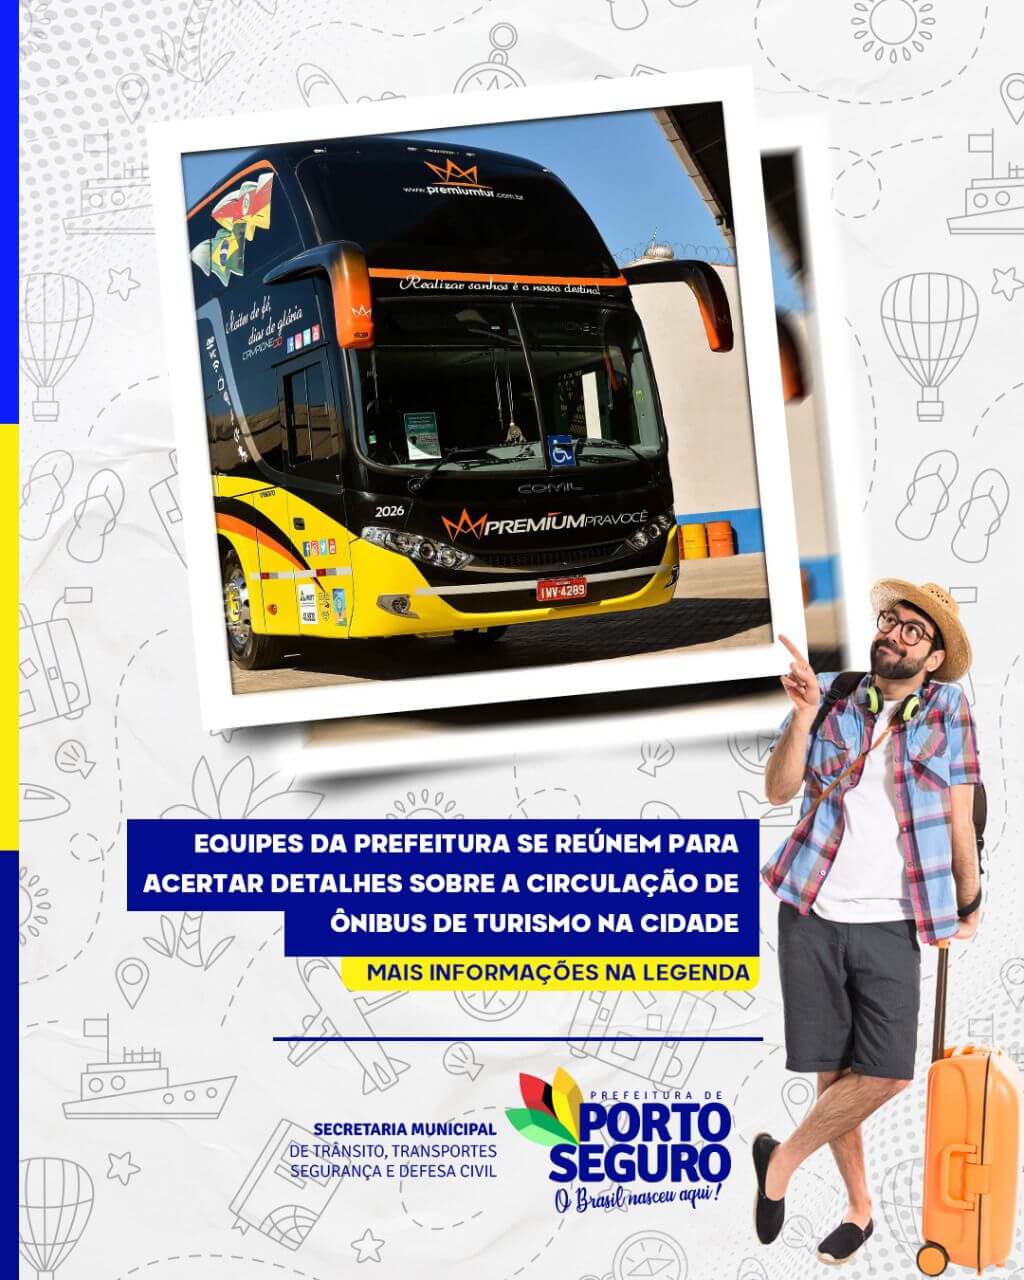 Porto Seguro - Equipes da Prefeitura se reúnem para acertar detalhes sobre a circulação de ônibus de turismo na cidade 64